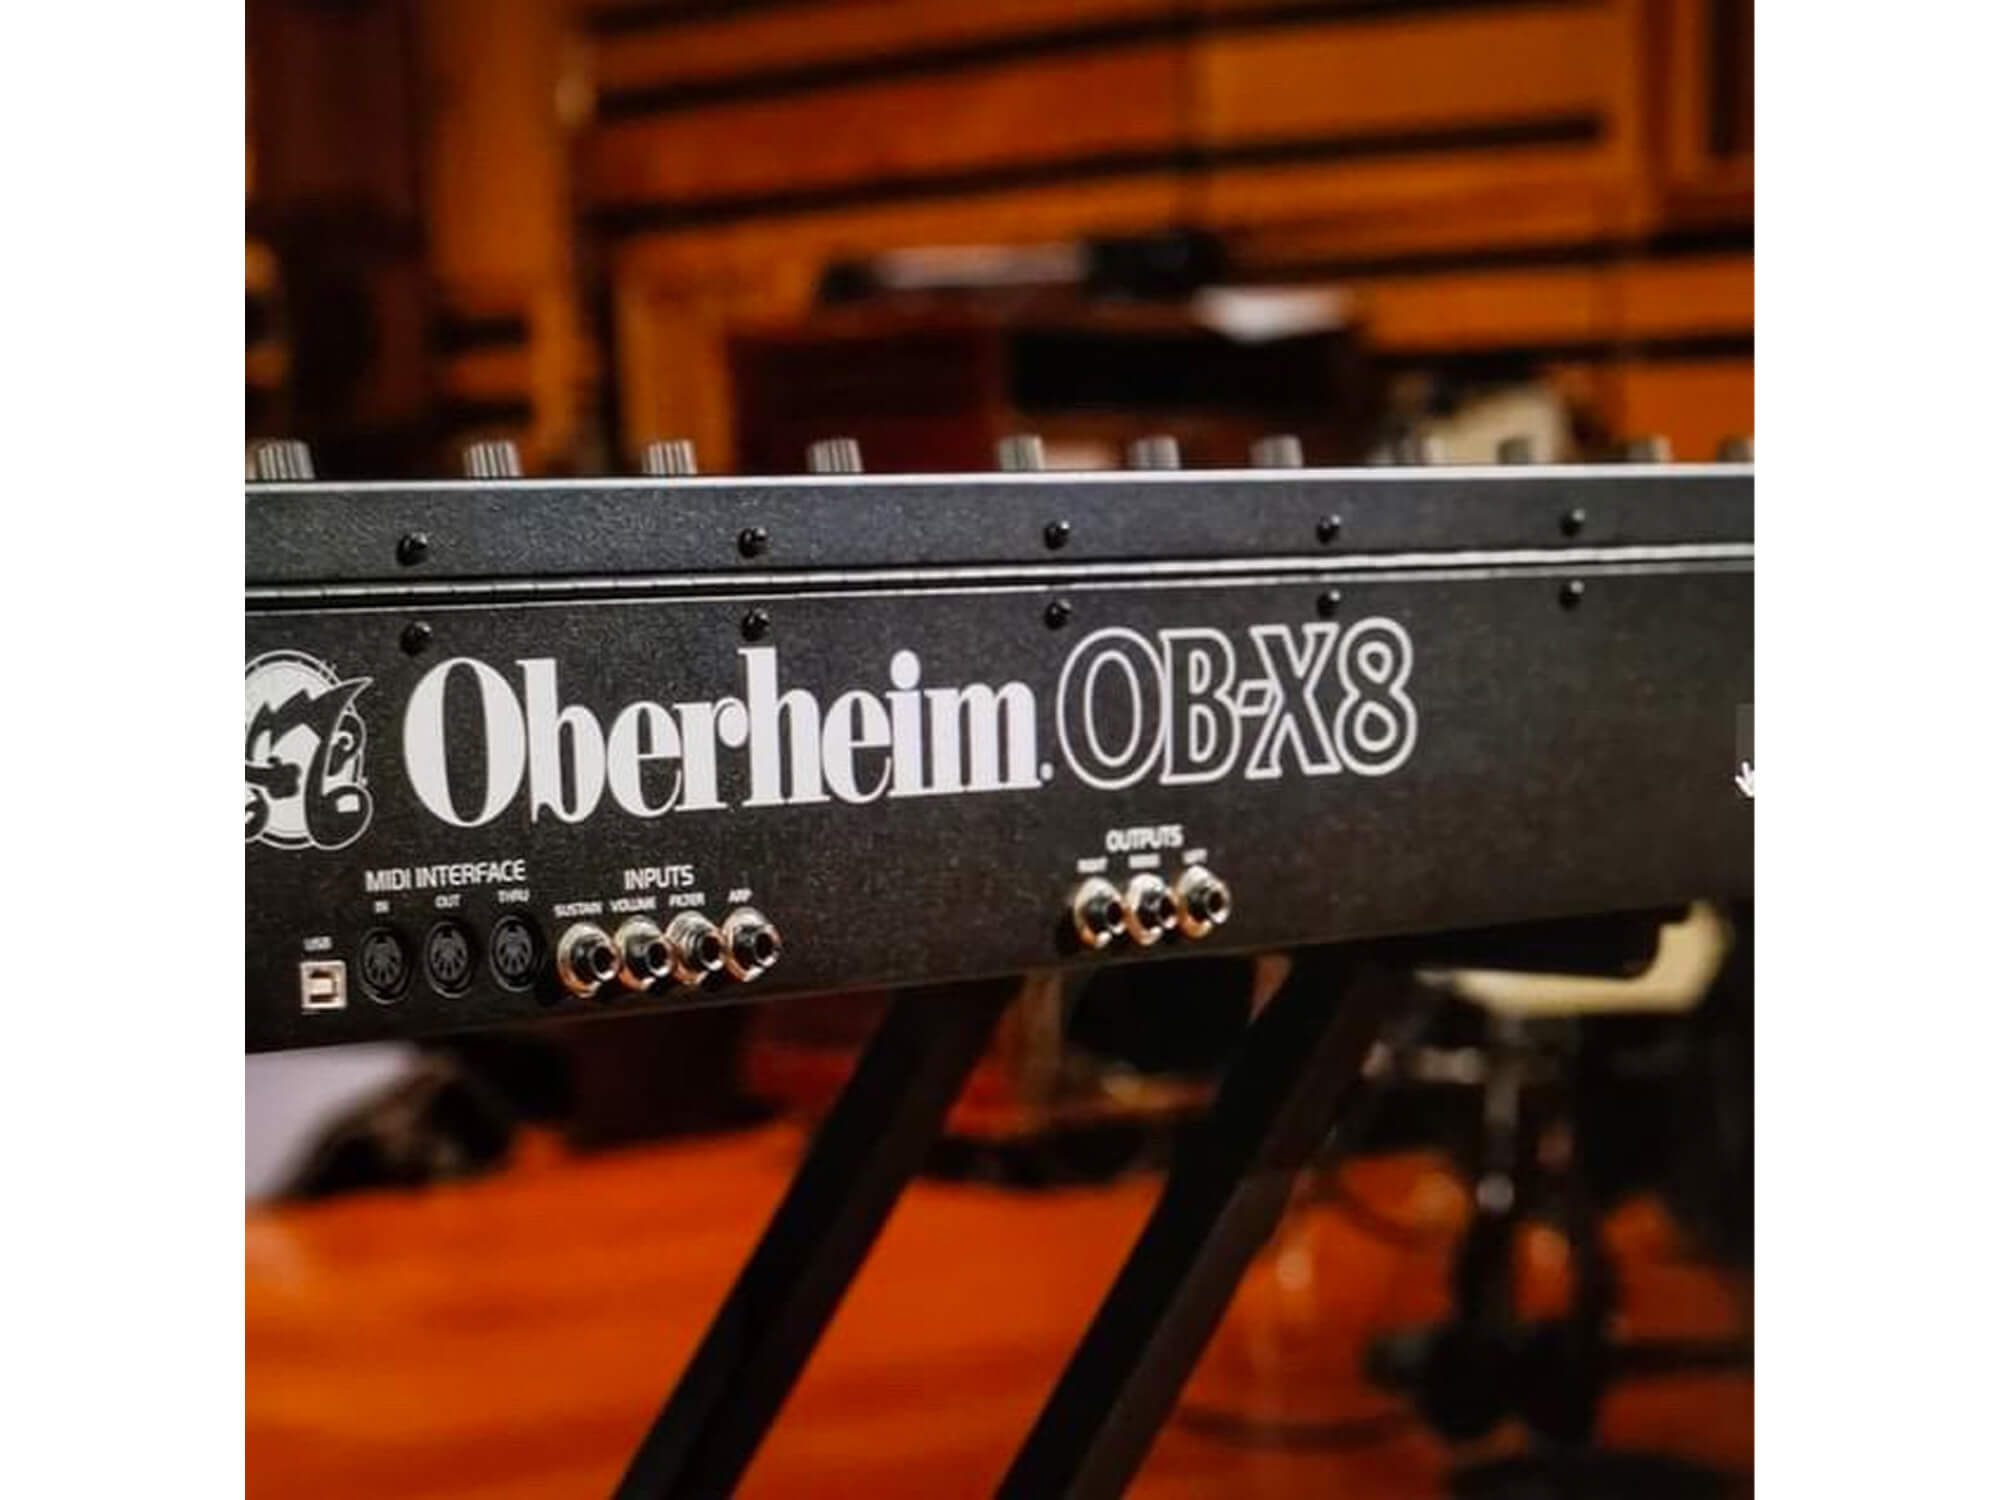 Oberheim OB-X8 leak via 99musik